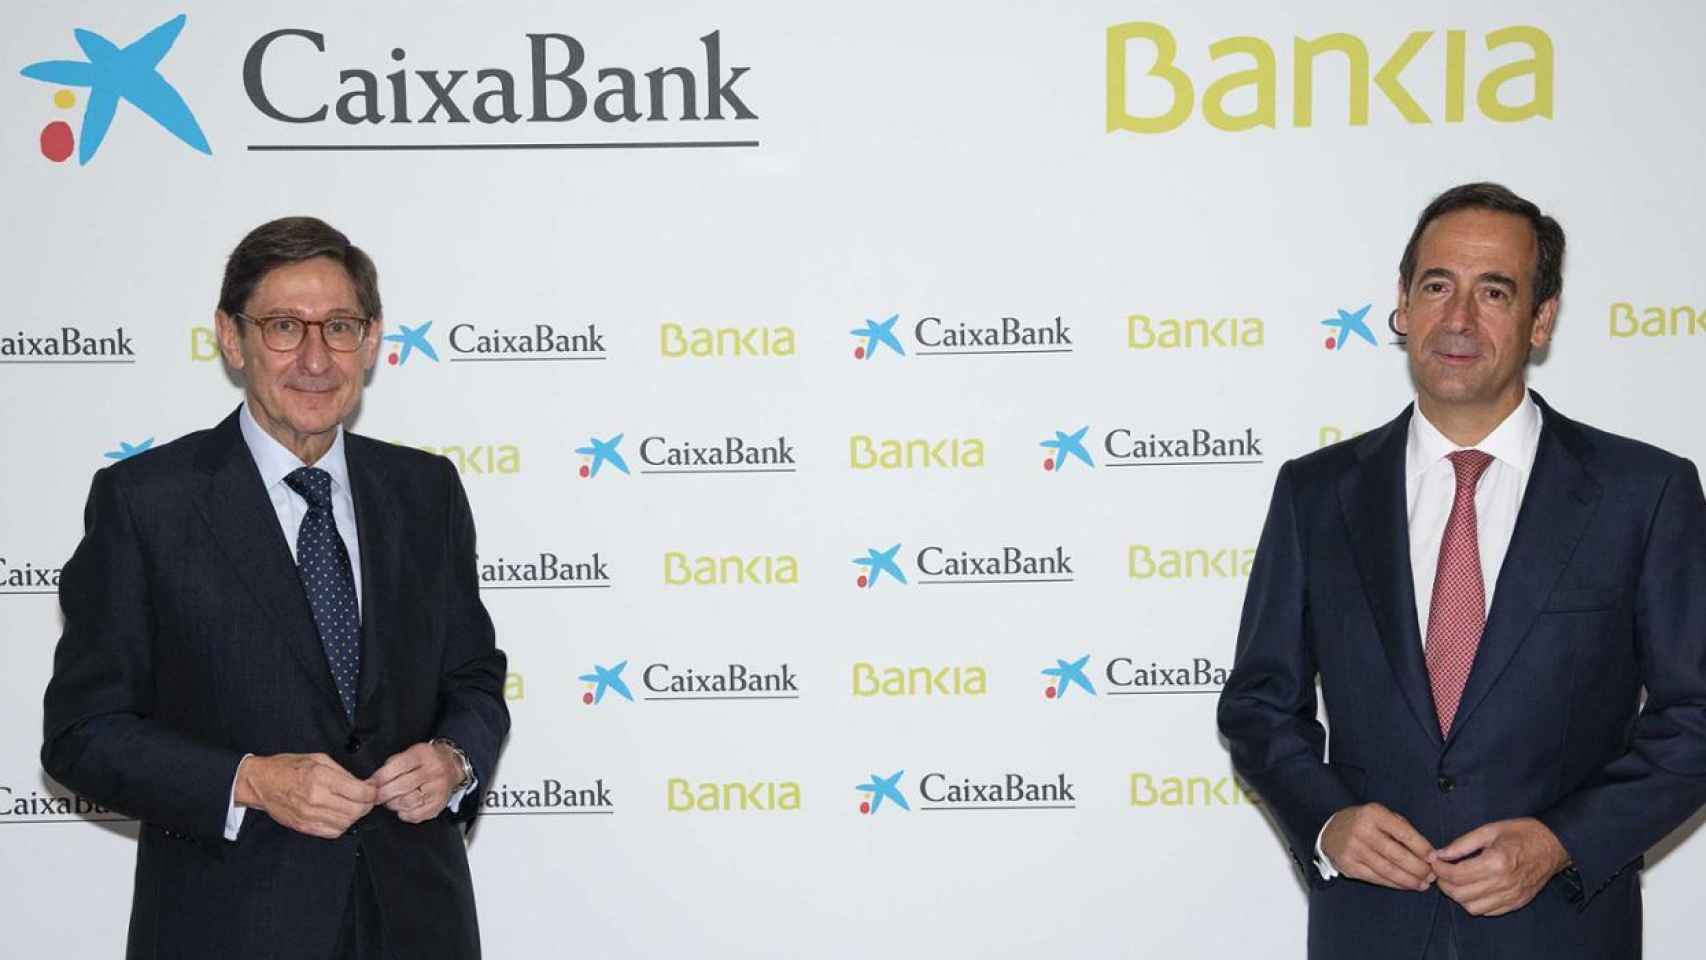 La nueva CaixaBank decidirá su política de retribución al accionista más adelante.